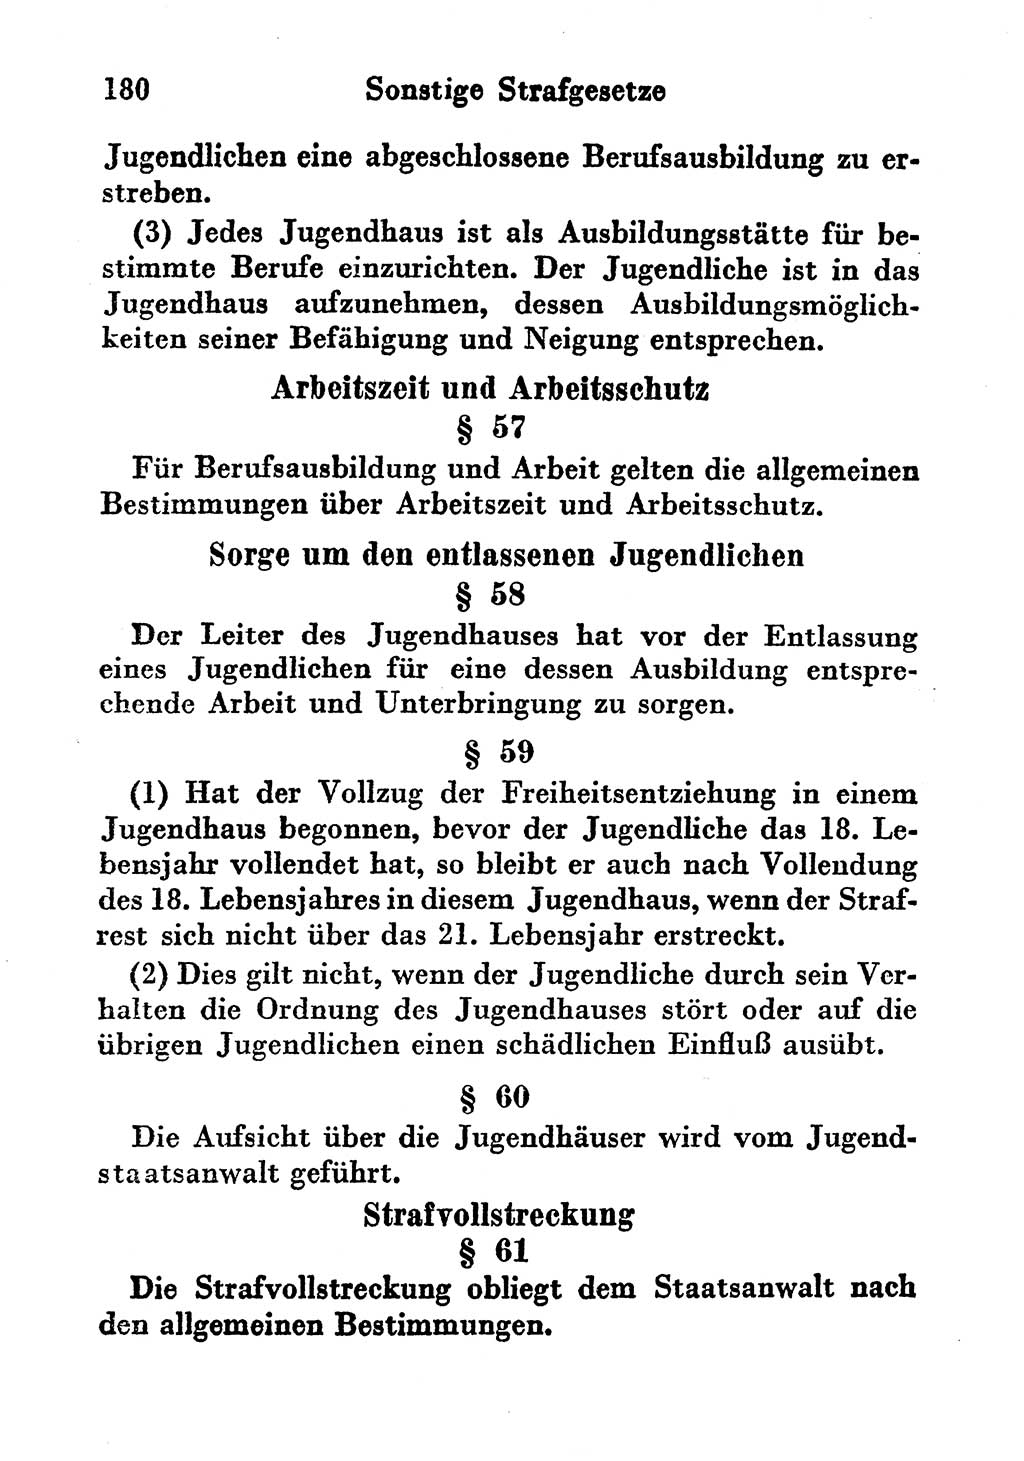 Strafgesetzbuch (StGB) und andere Strafgesetze [Deutsche Demokratische Republik (DDR)] 1956, Seite 180 (StGB Strafges. DDR 1956, S. 180)